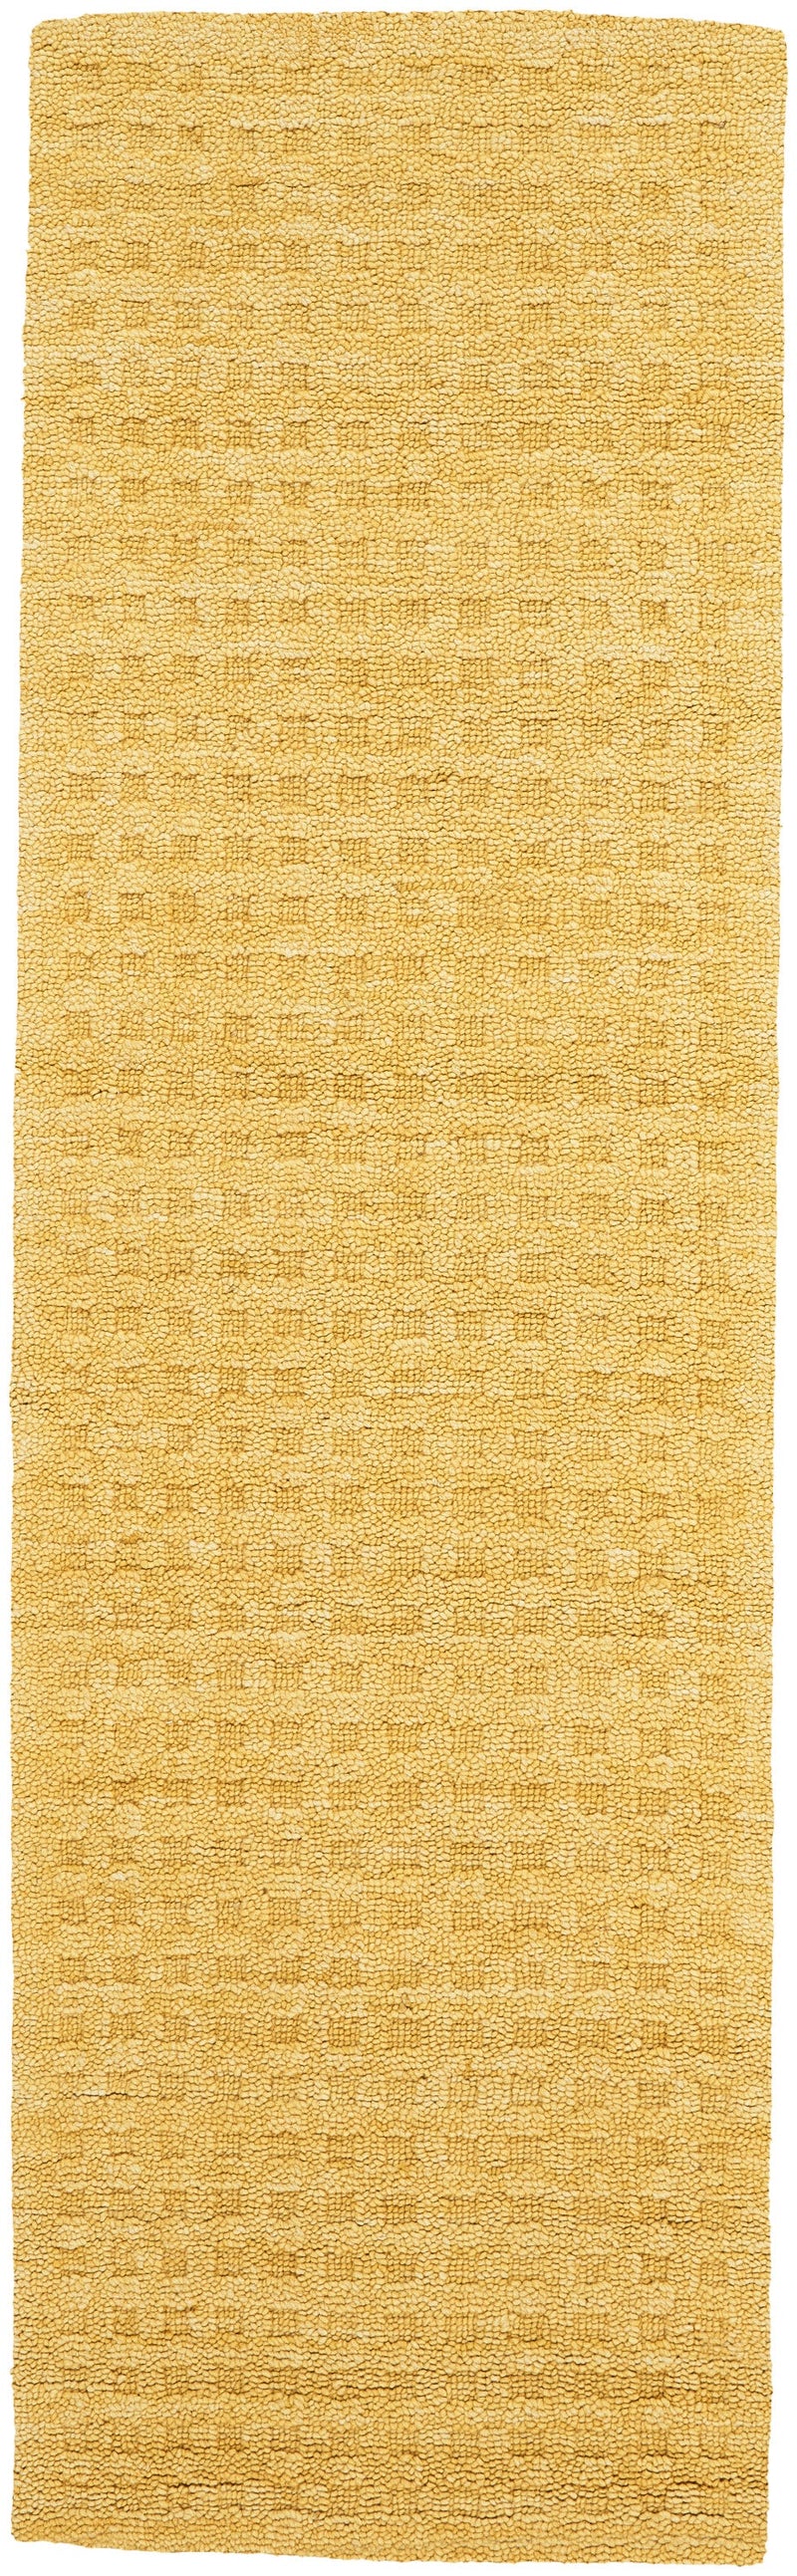 media image for marana handmade gold rug by nourison 99446400345 redo 2 222